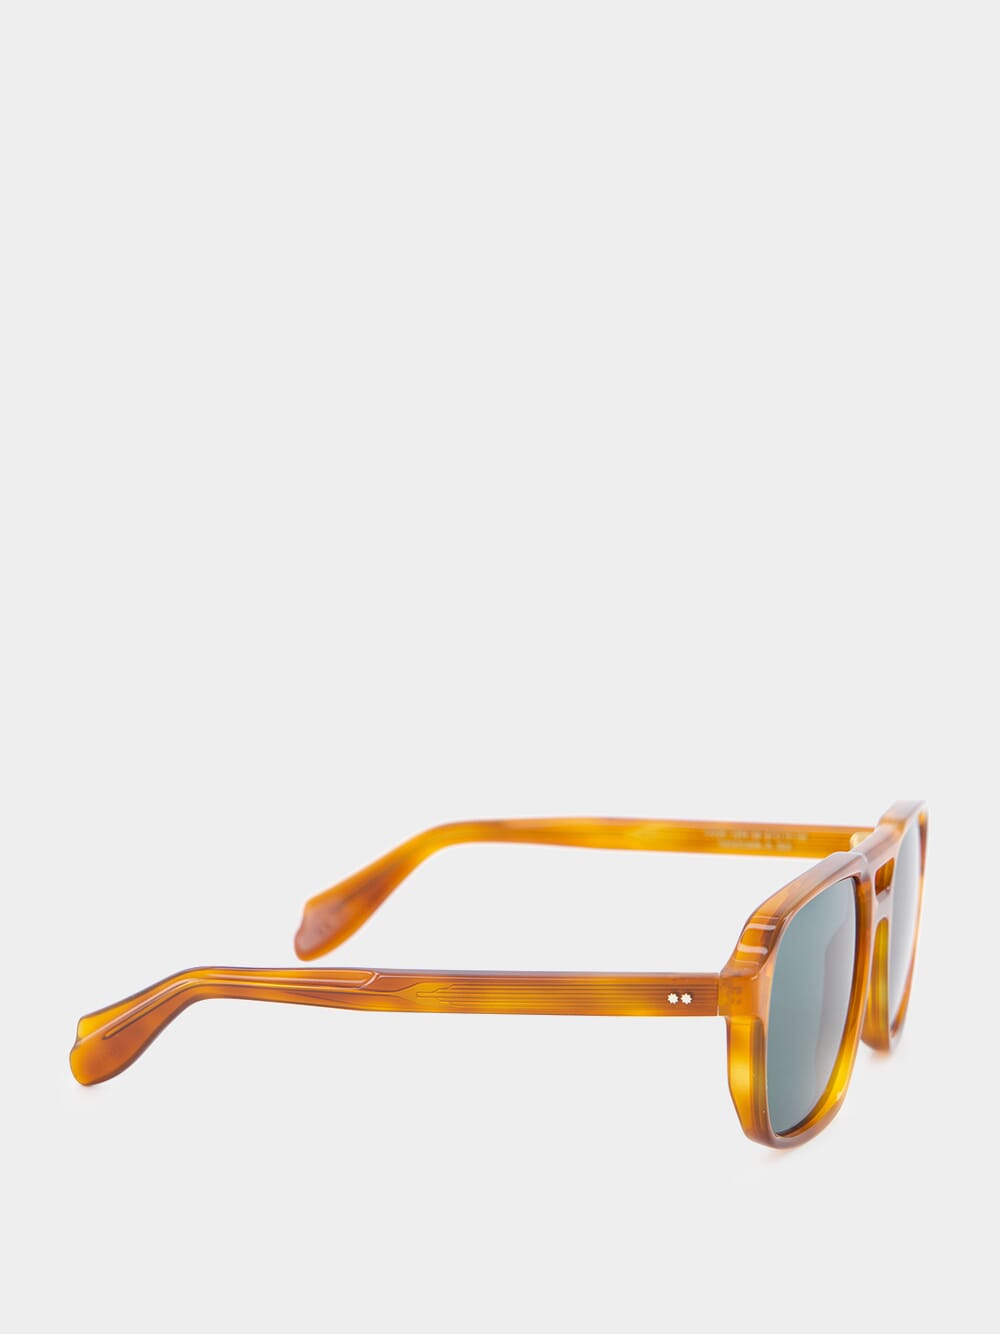 Honey Havana 1394 Aviator Sunglasses